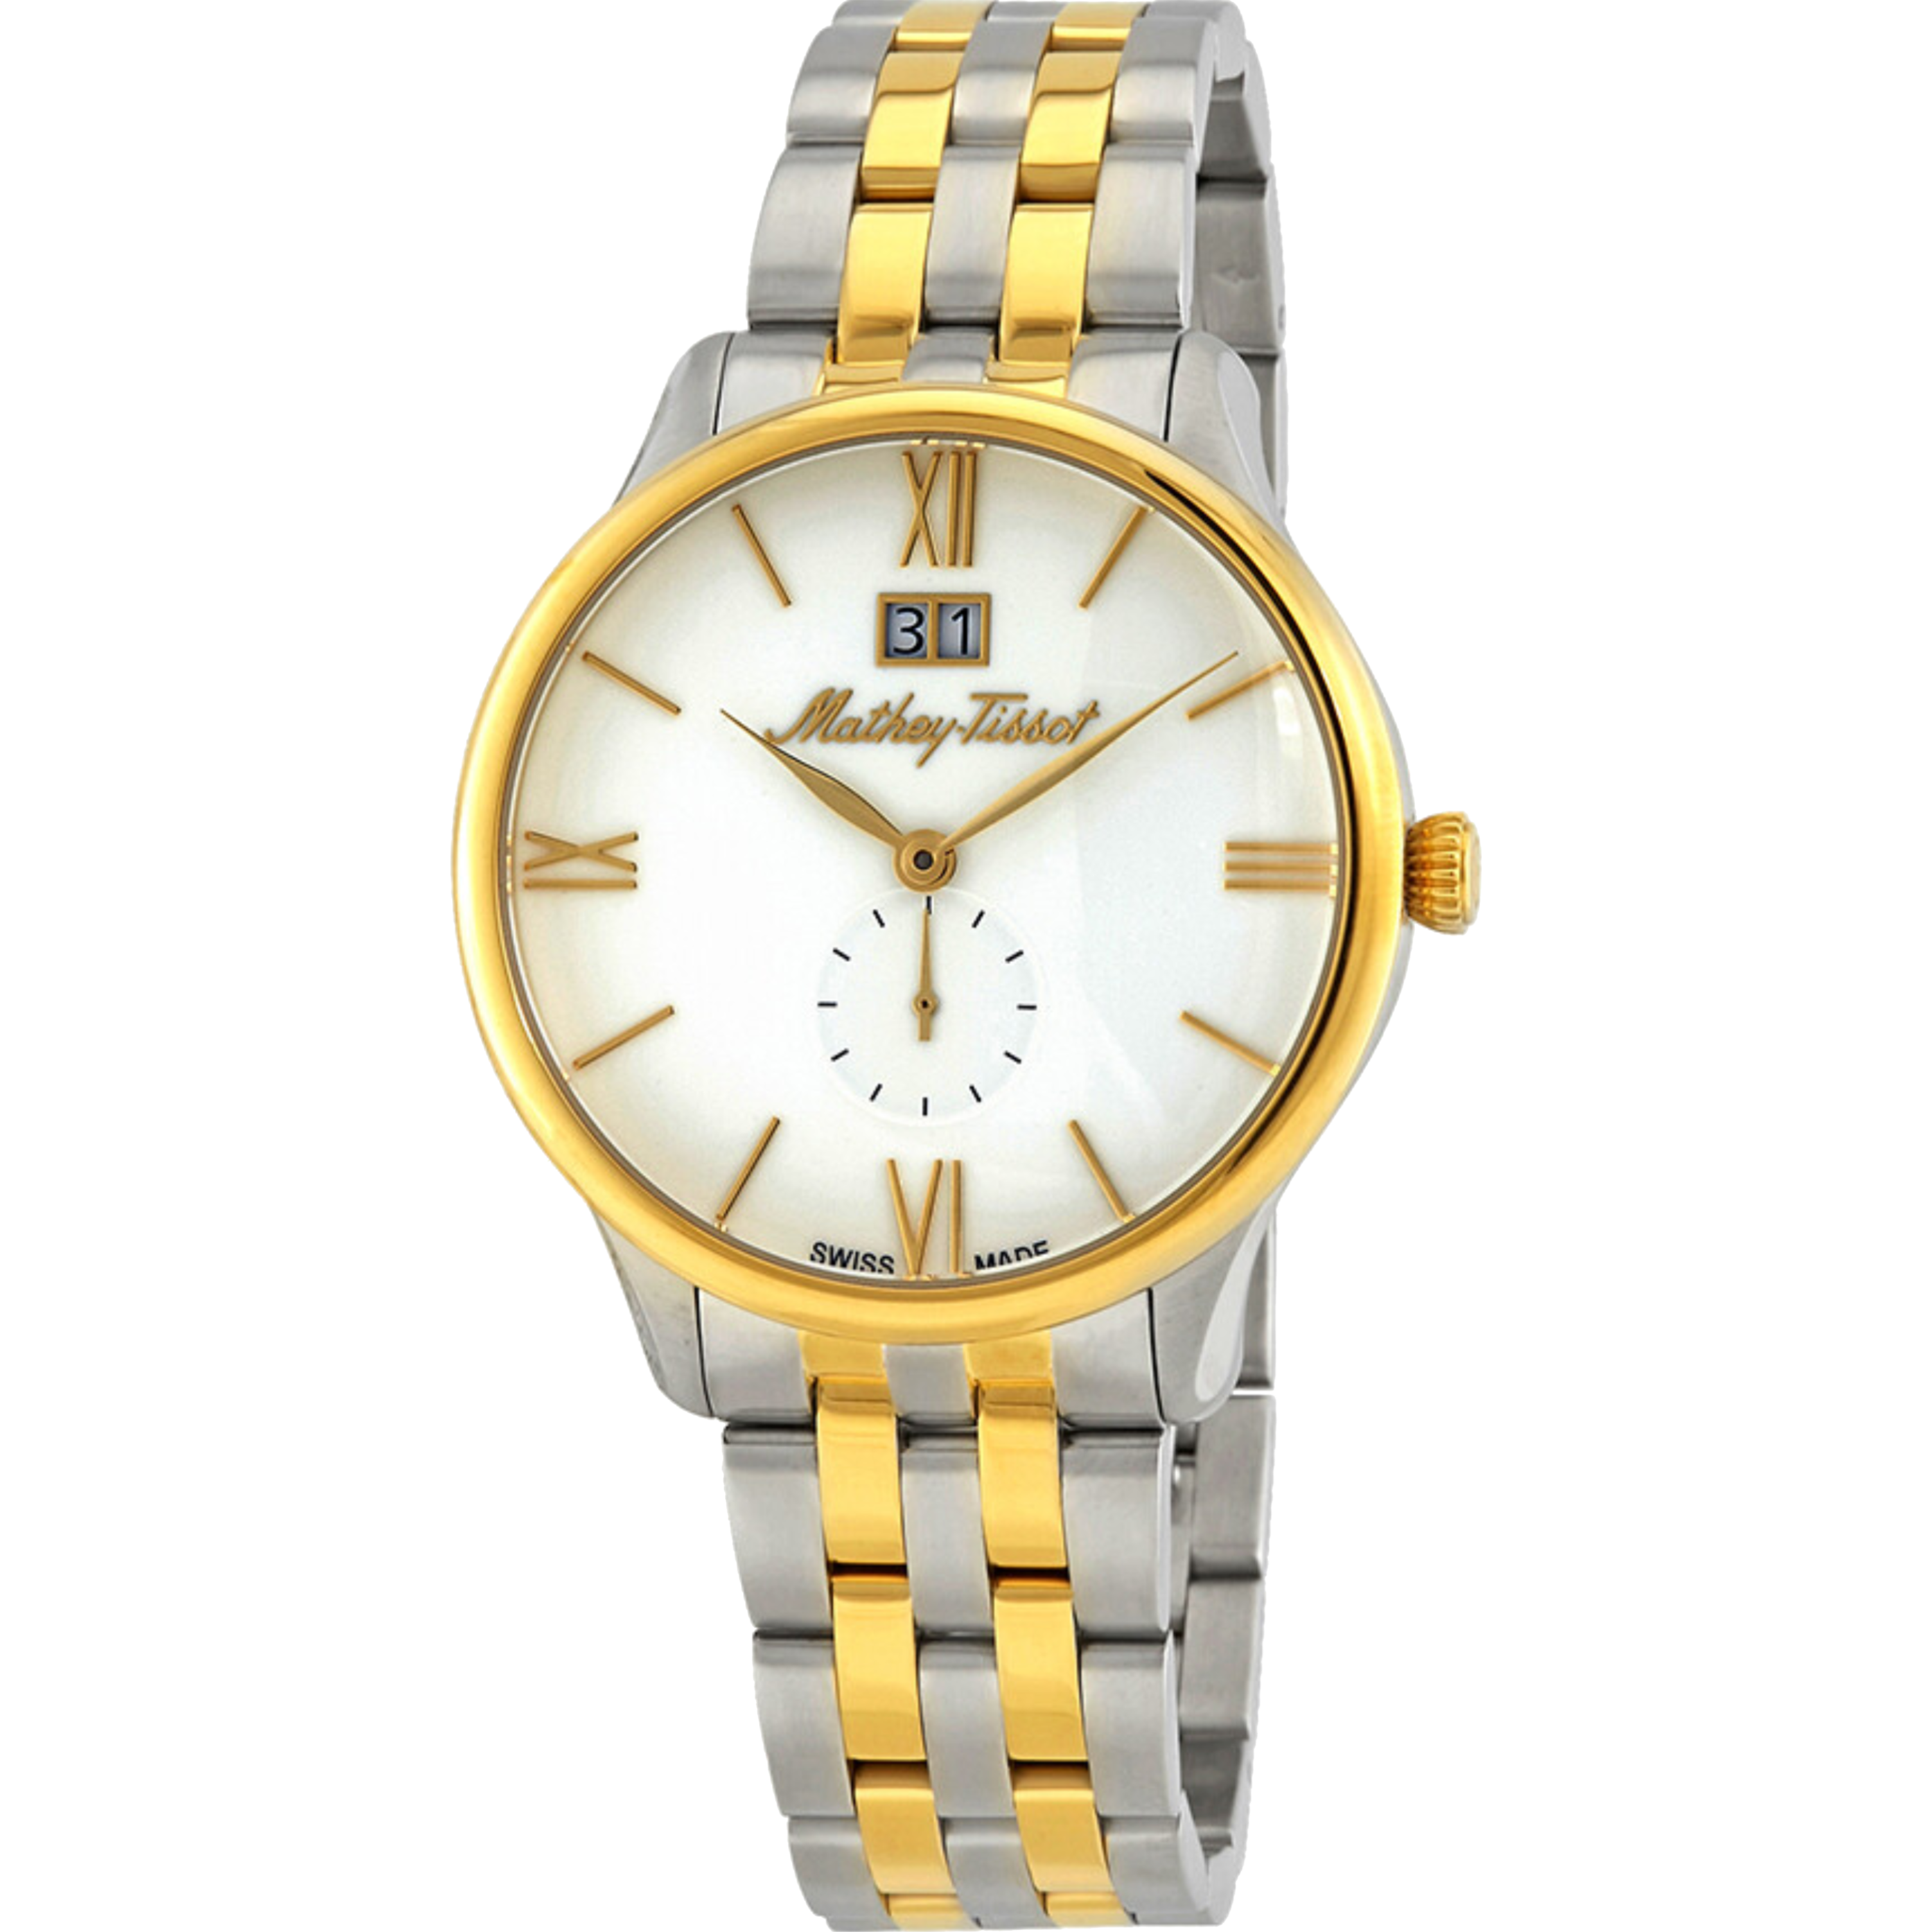 שעון יד לגבר Mathey Tissot H1886MBI 42mm צבע כסף/זהב/זכוכית ספיר - אחריות לשנתיים ע"י היבואן